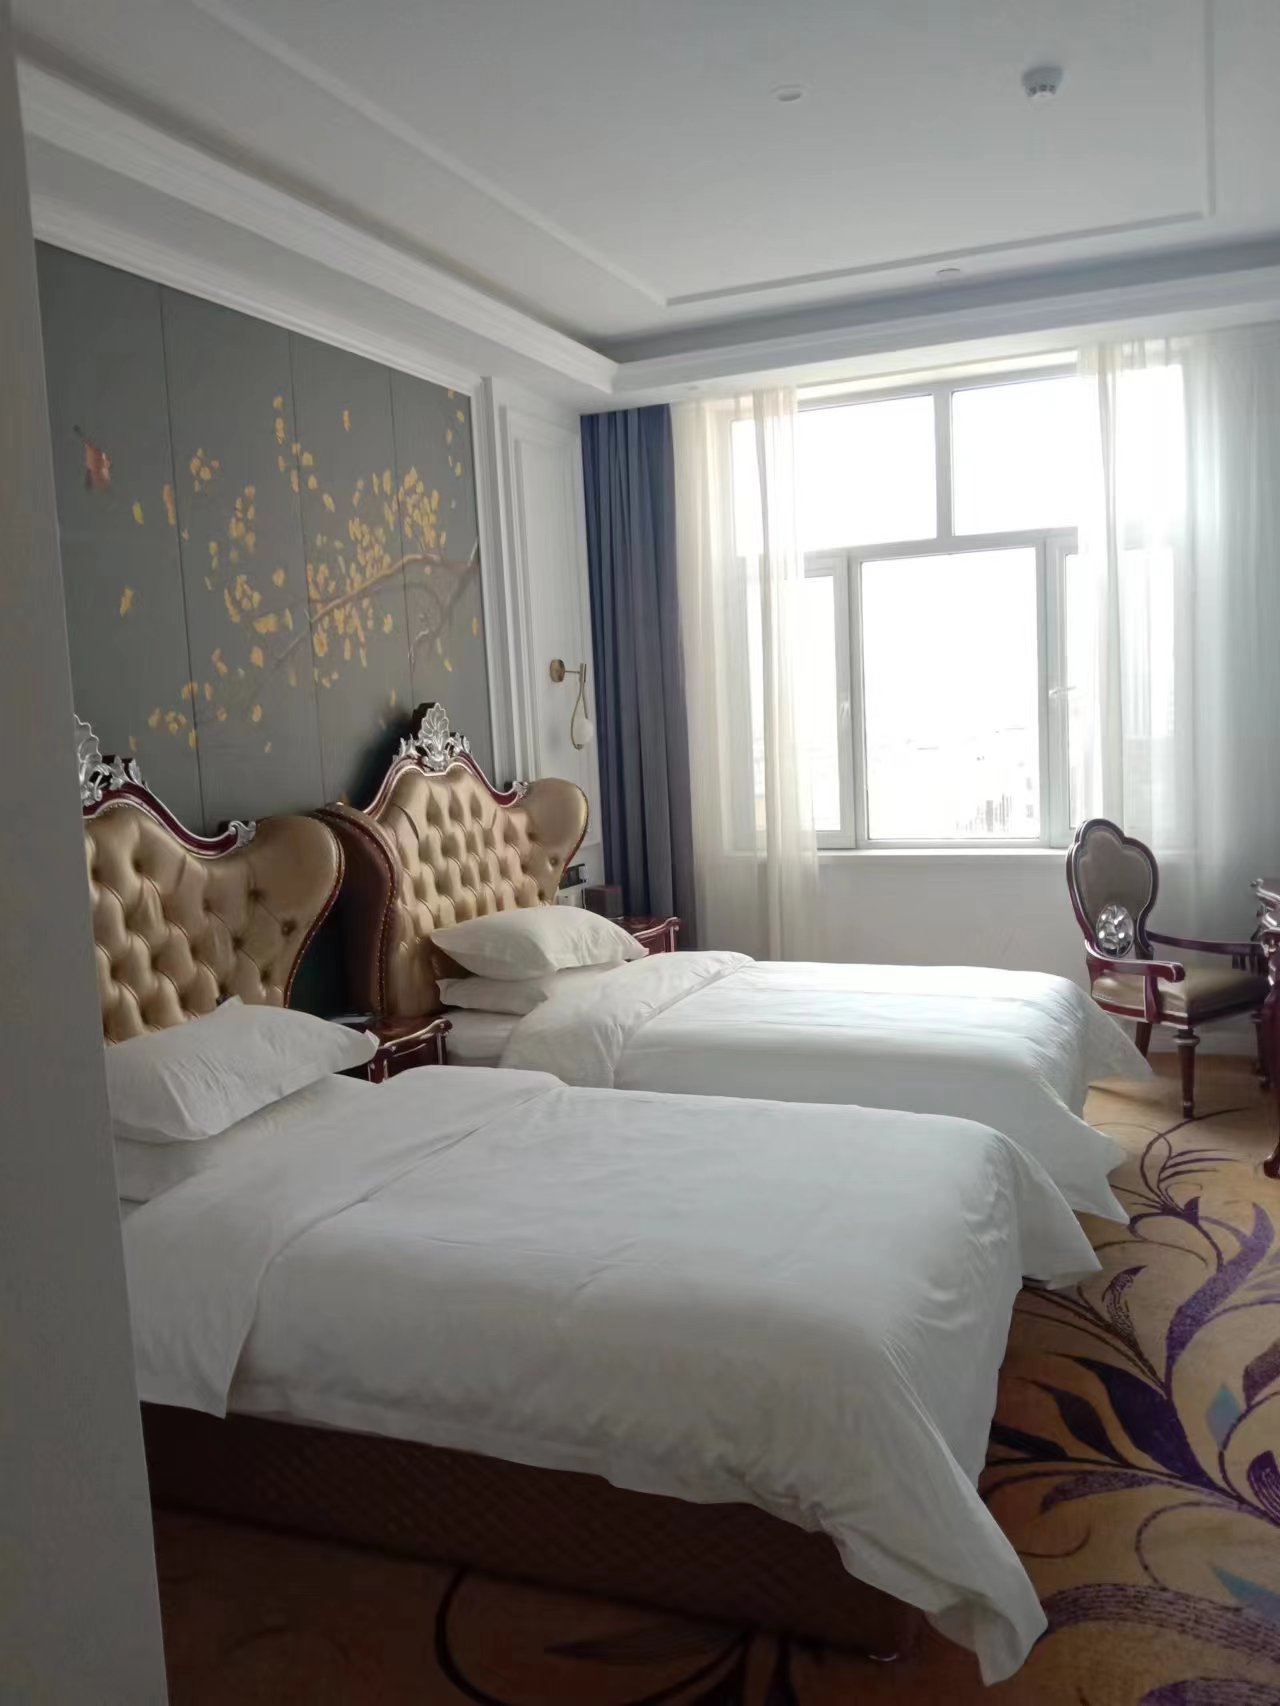 悦豪酒店在磐石这个地方还真是一个不错的酒店，干净卫生，欧式风格的房间布局，尤其是睡床靠背，宽大舒适，